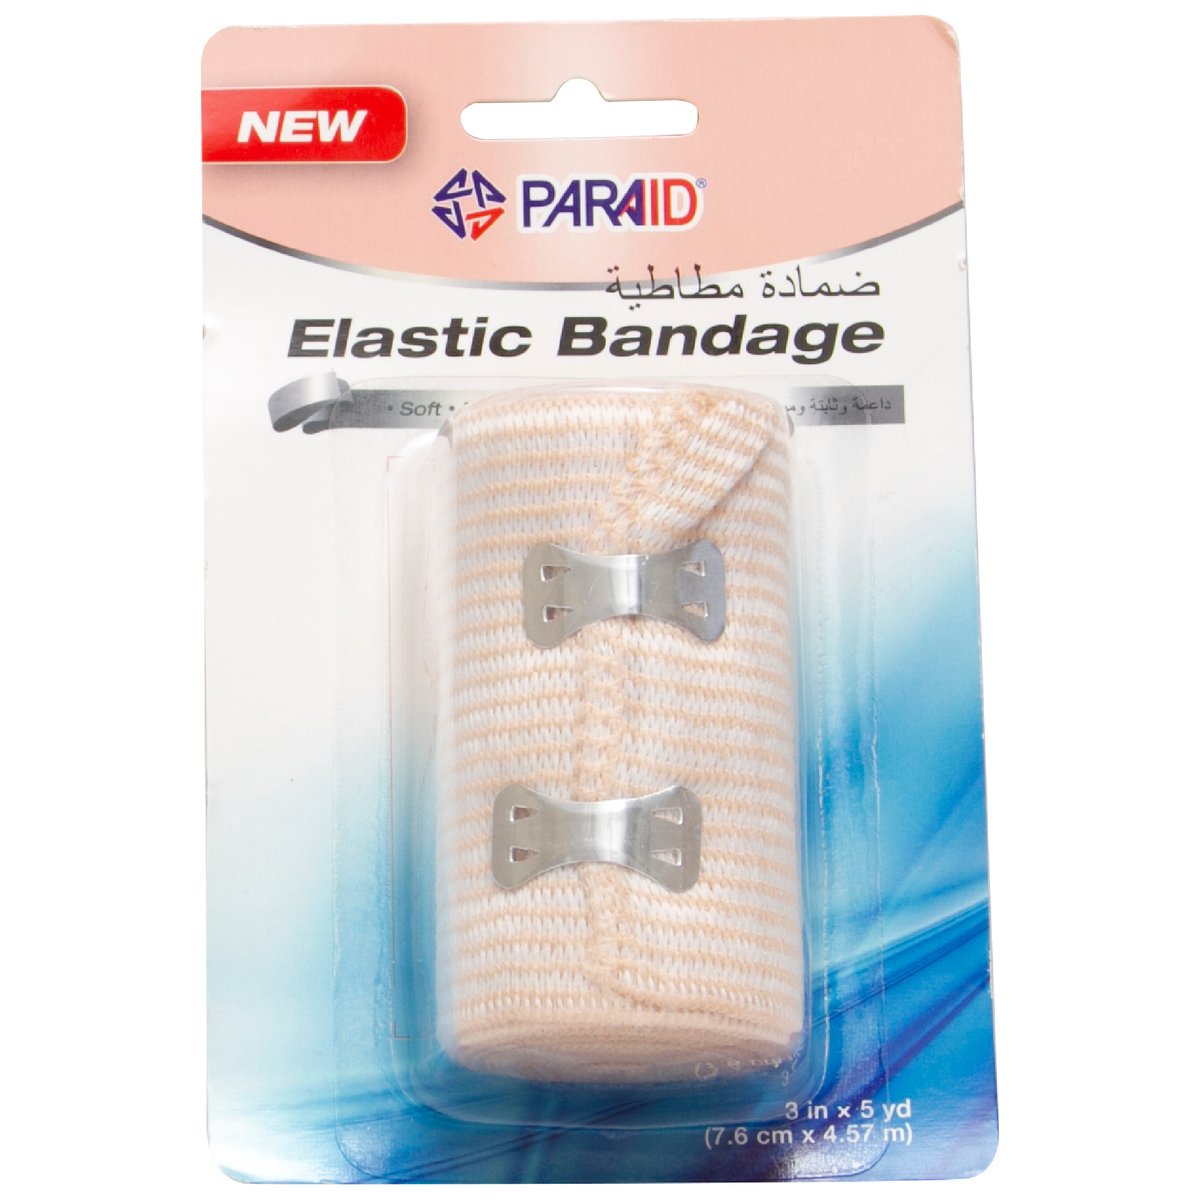 Paraid Elastic Bandage 1 pc